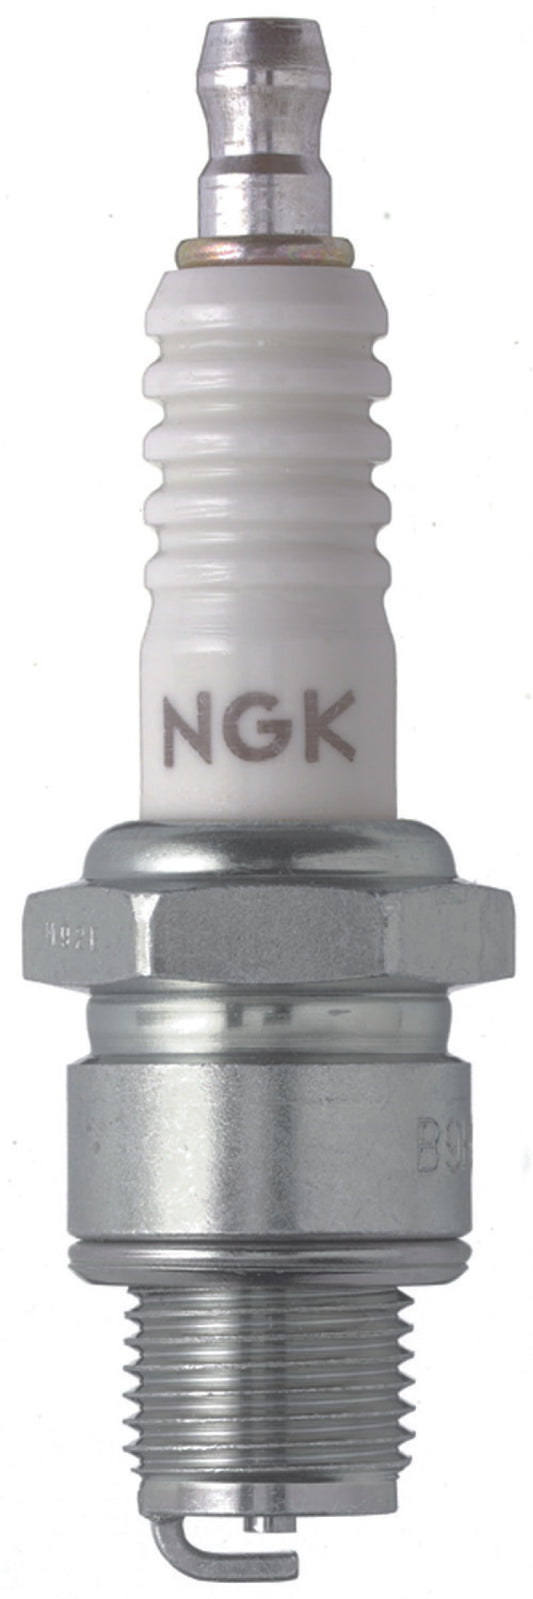 NGK Nickel Spark Plug Box of 4 (B7HS)